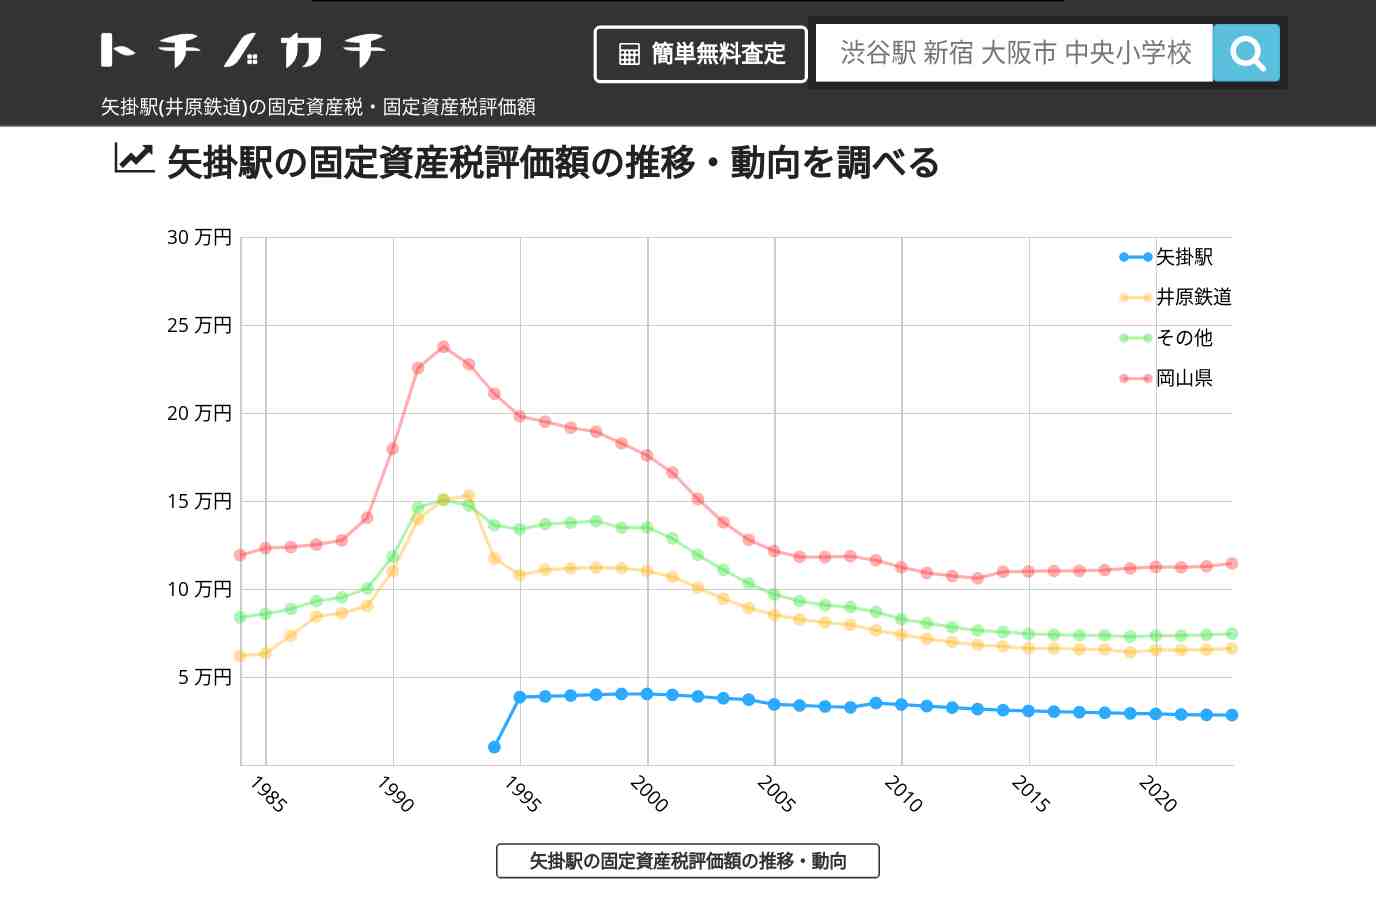 矢掛駅(井原鉄道)の固定資産税・固定資産税評価額 | トチノカチ